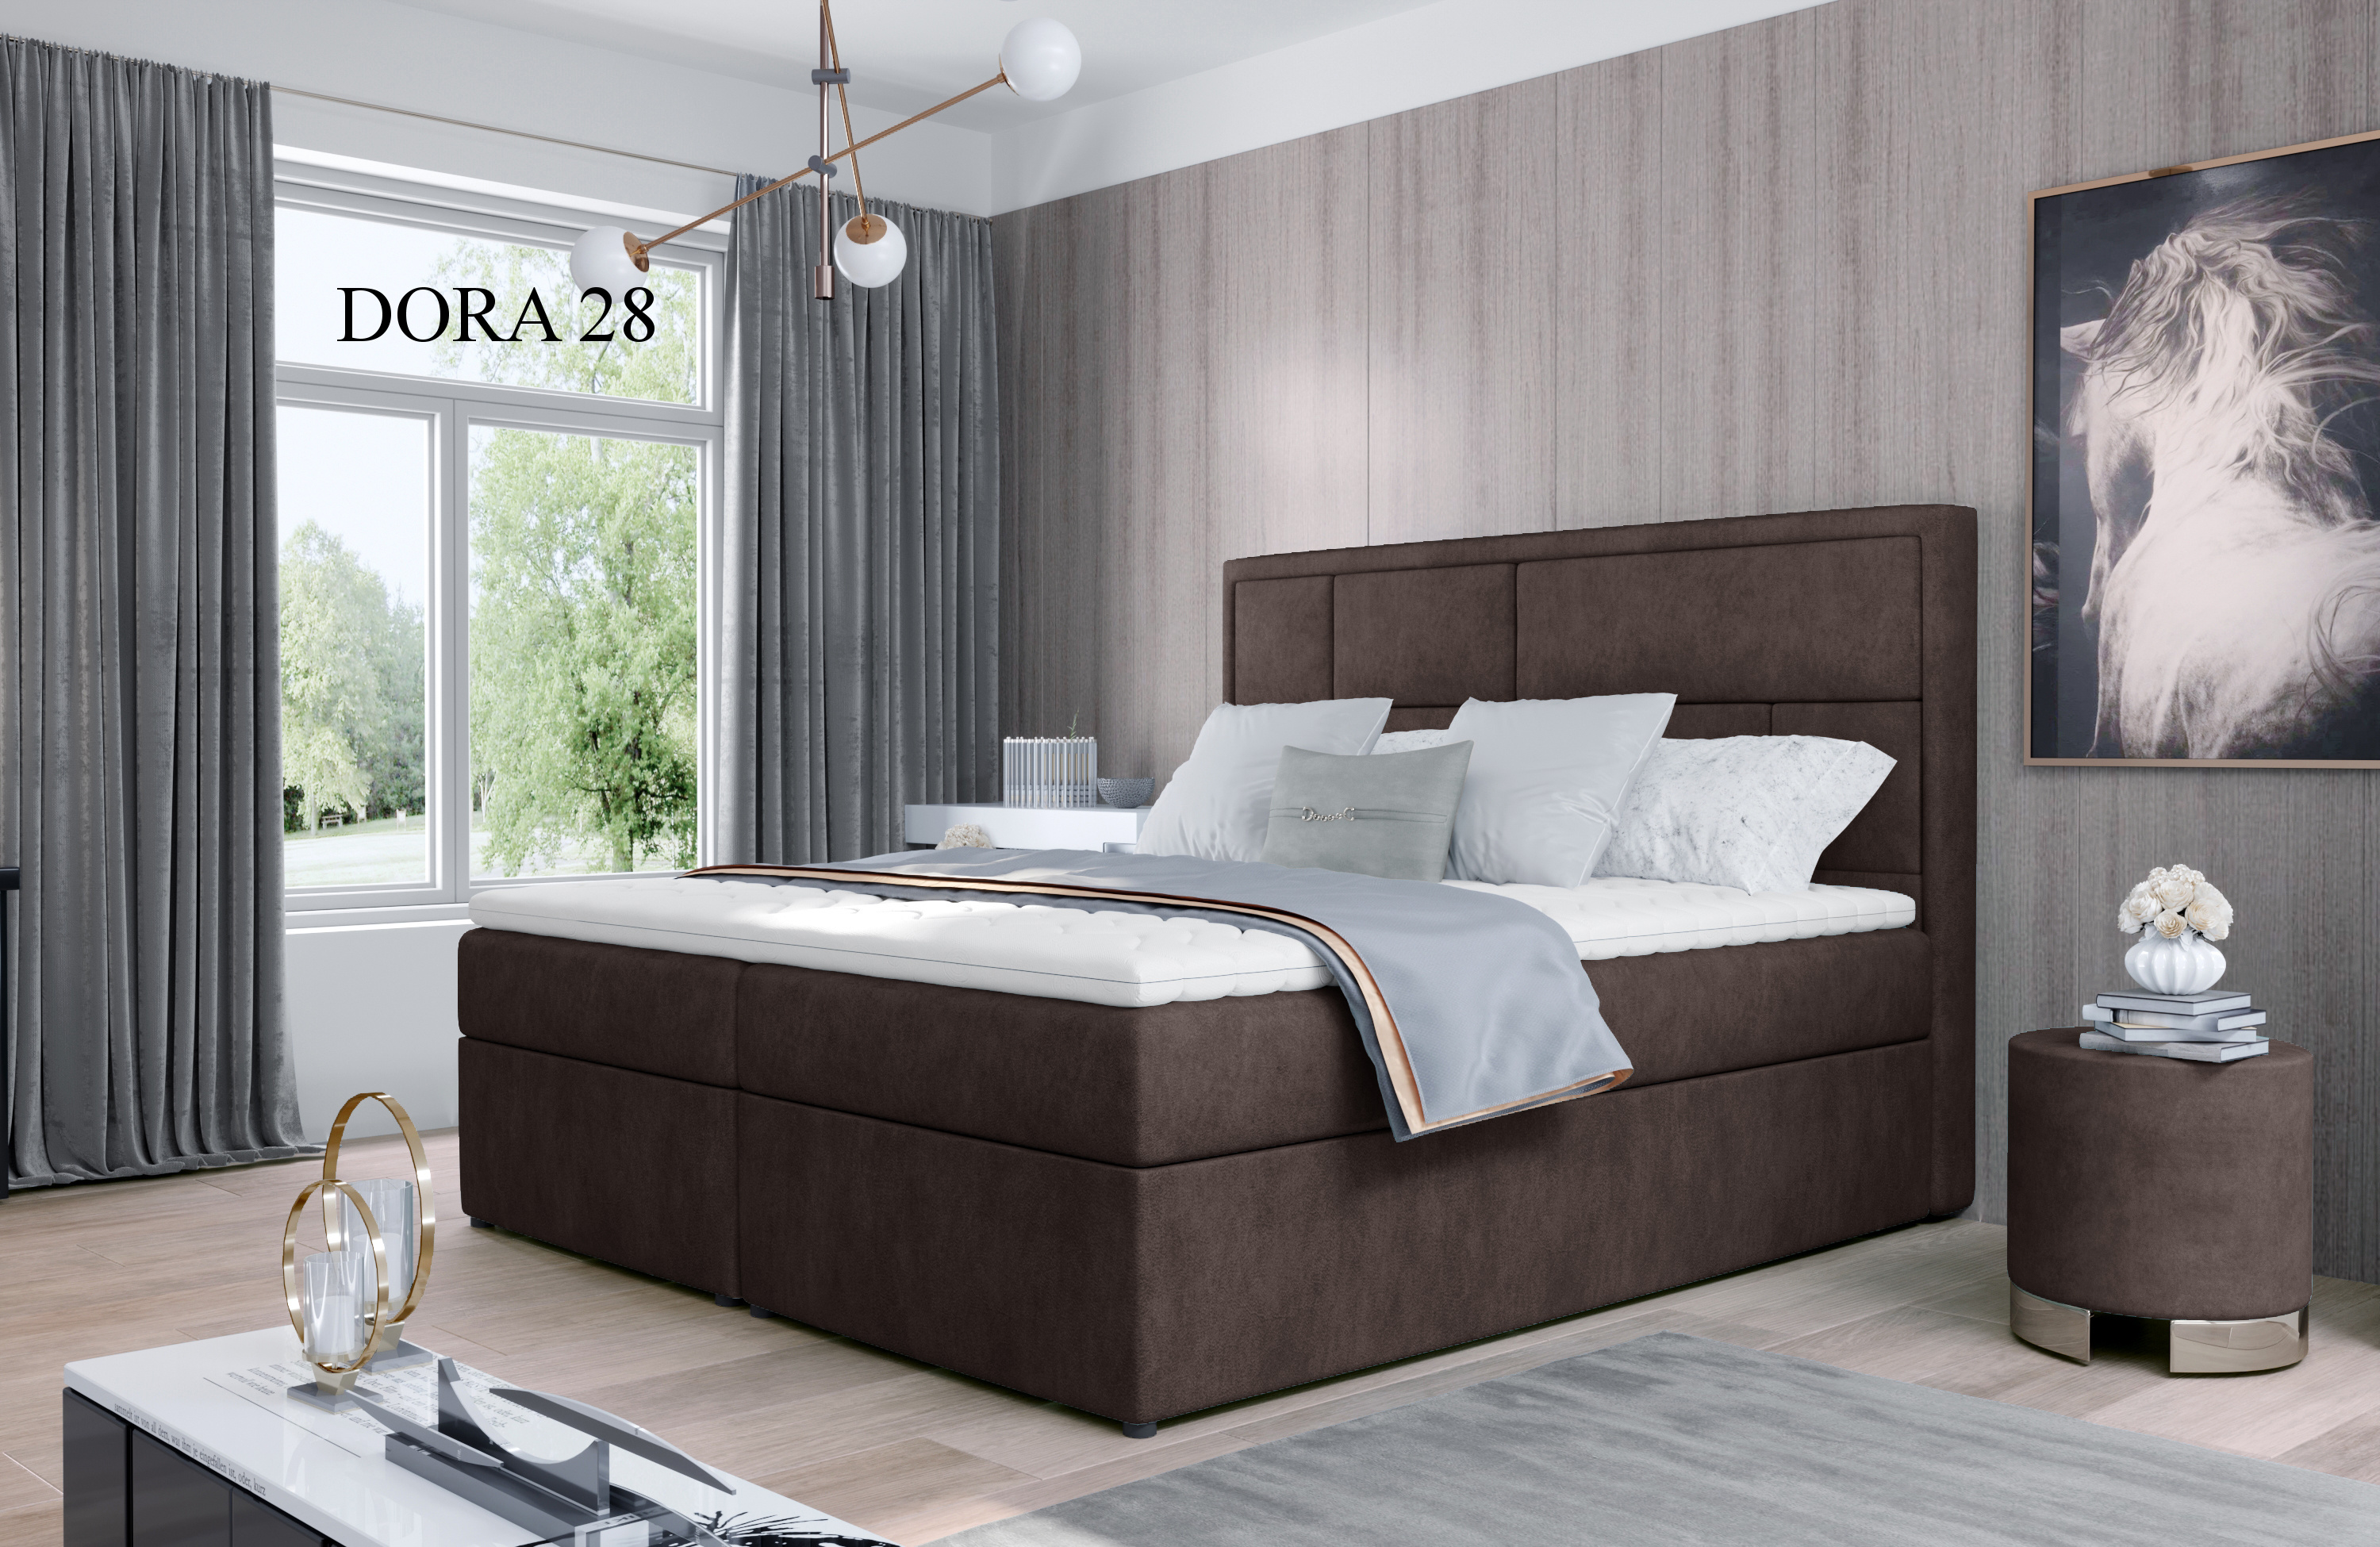 Čalouněná postel MERON Boxsprings 180 x 200 cm Dora 28